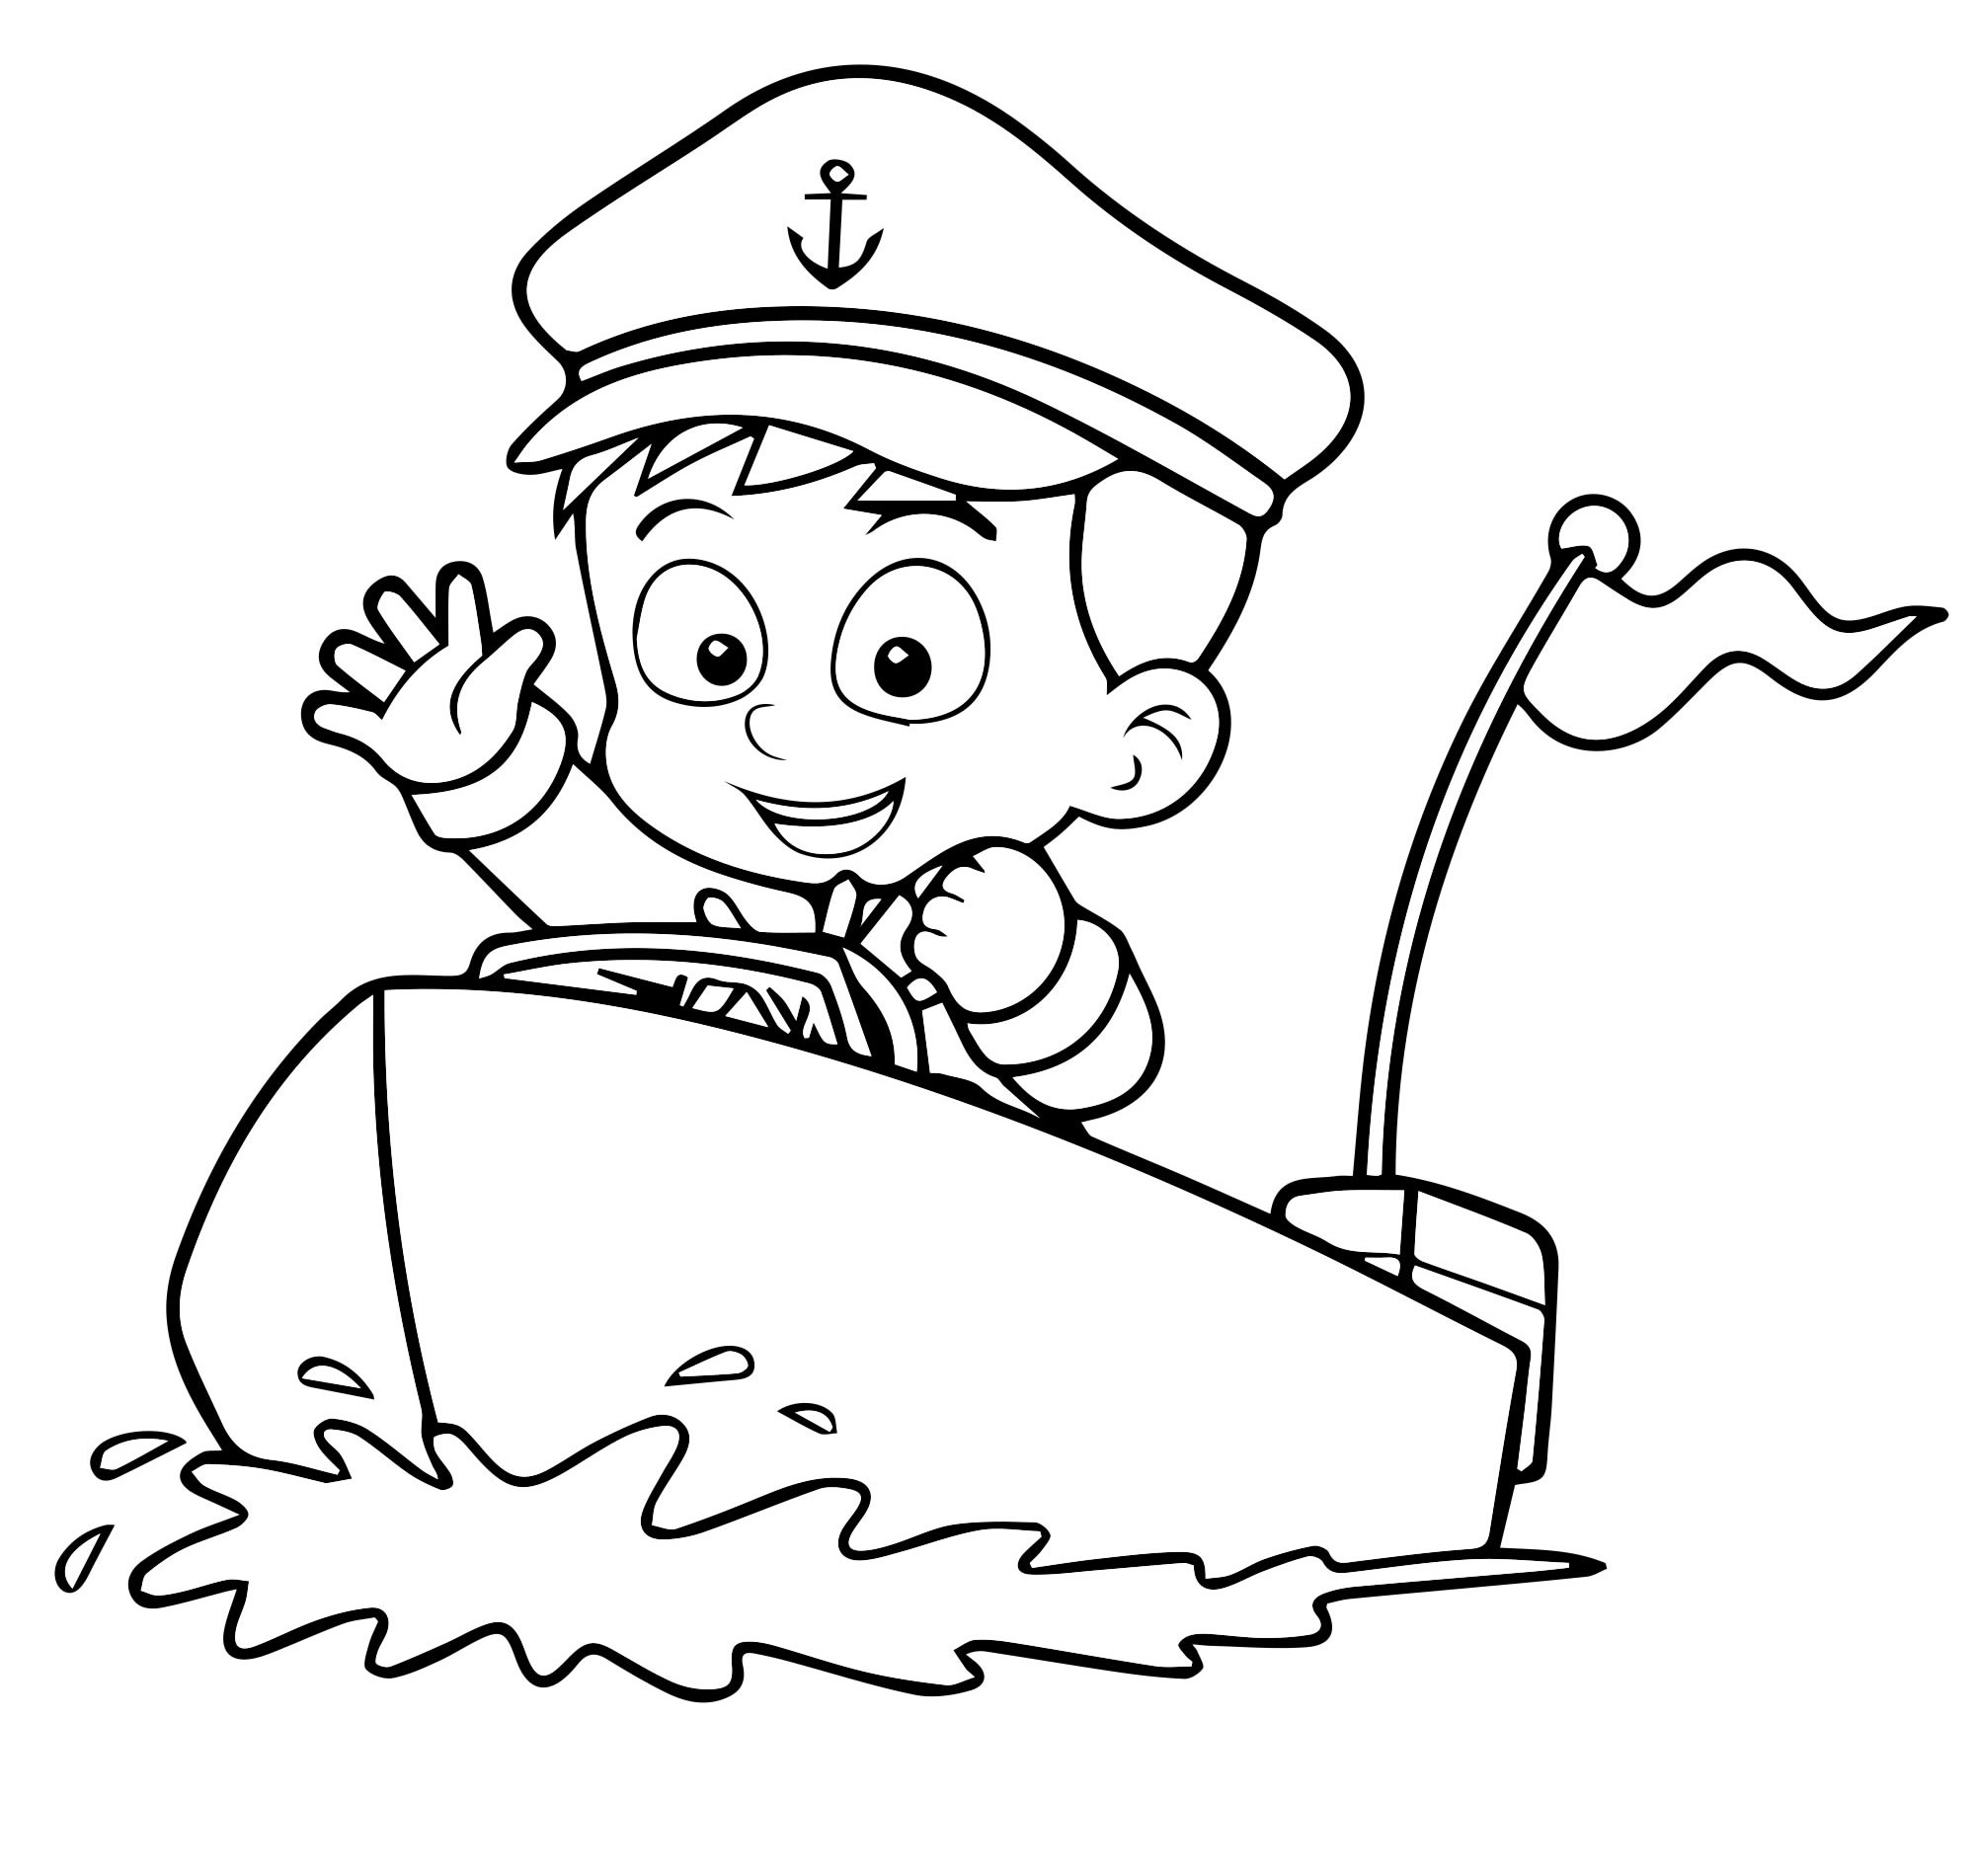 Моряк и моторная лодка раскраска для детей